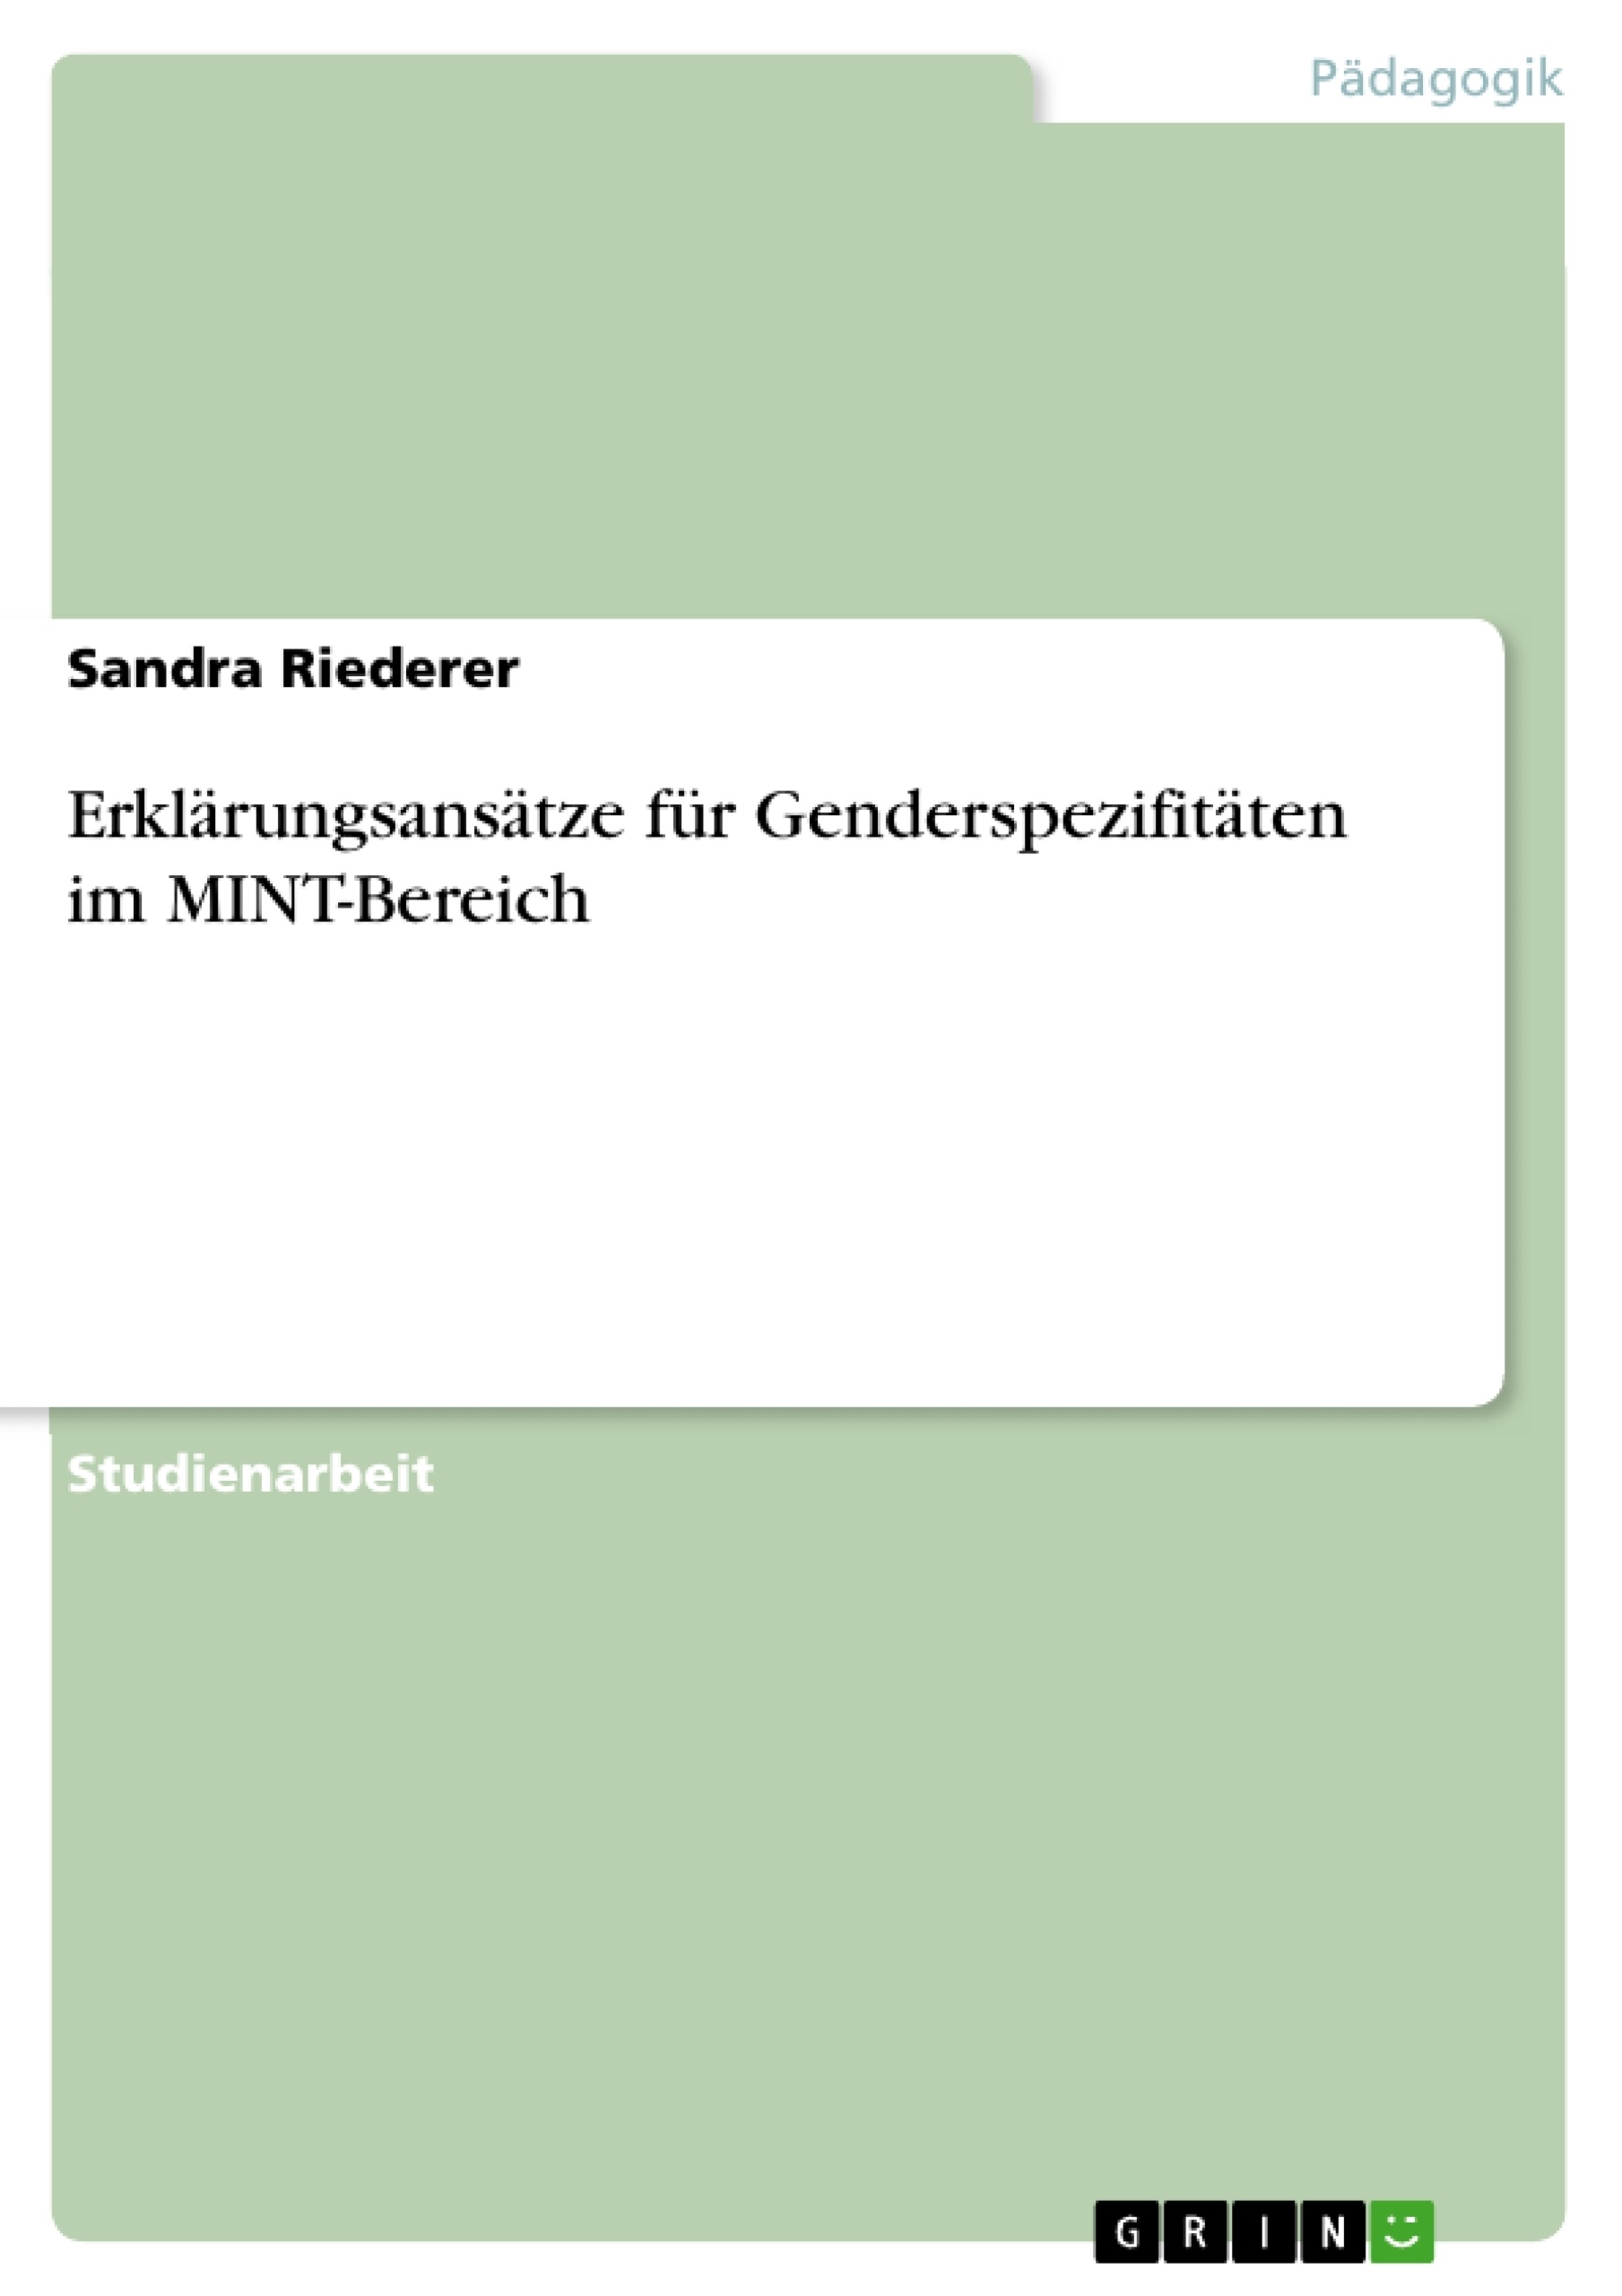 Título: Erklärungsansätze für Genderspezifitäten im MINT-Bereich 